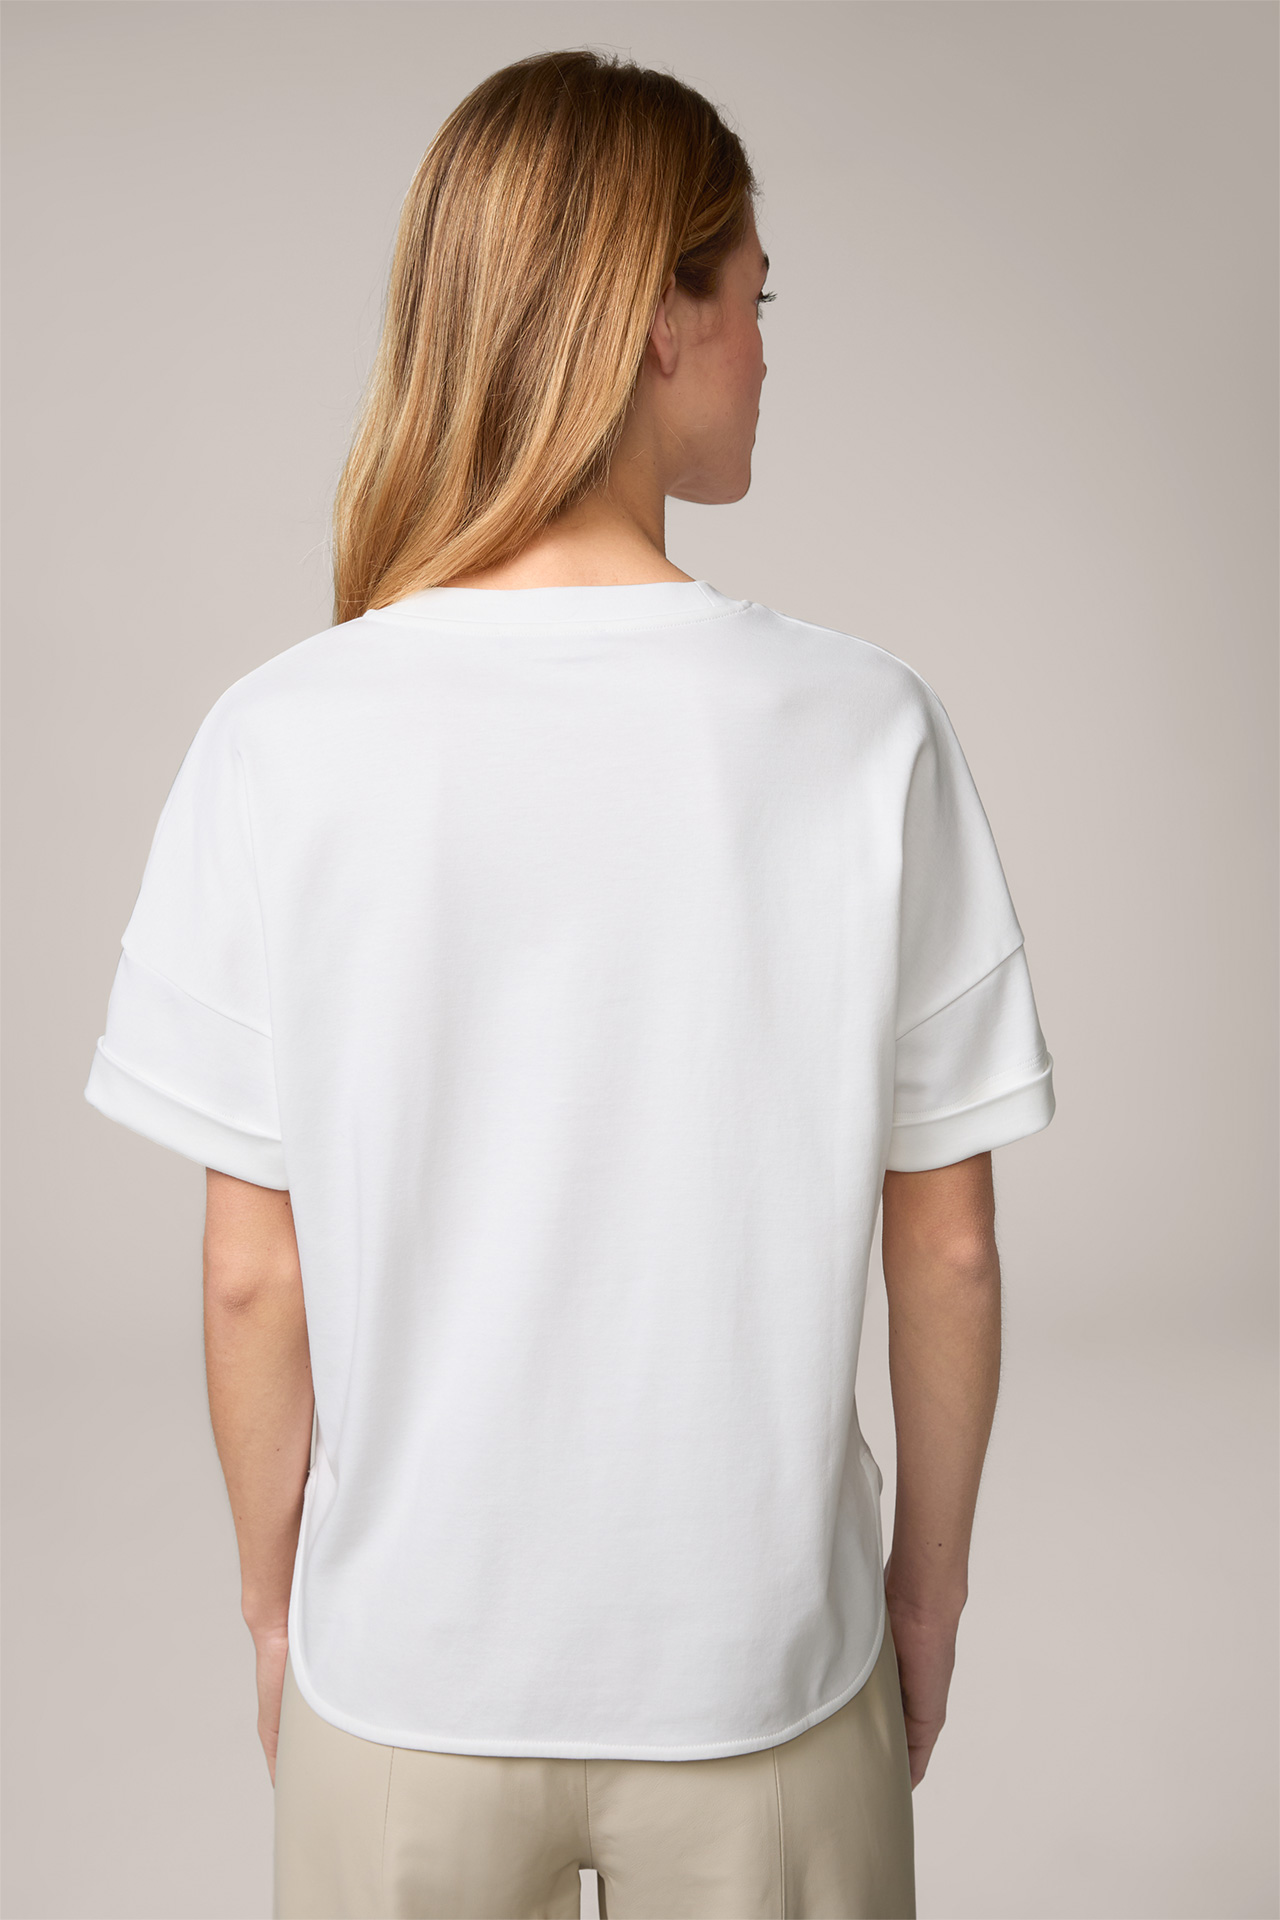  Cotton Interlock Half-Sleeved Shirt in White